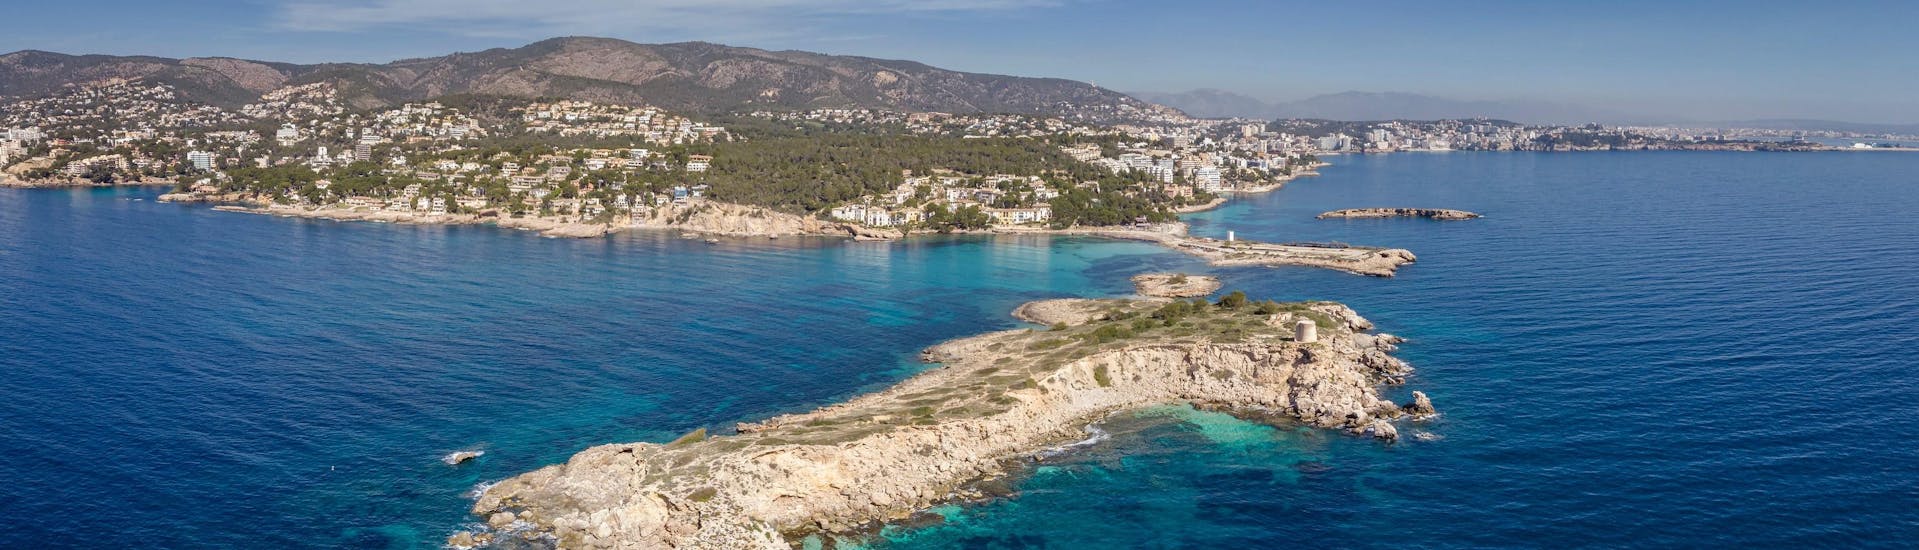 Vista sobre la hermosa playa de Illetes, que podrá descubrir durante un paseo en barco desde Palma de Mallorca.